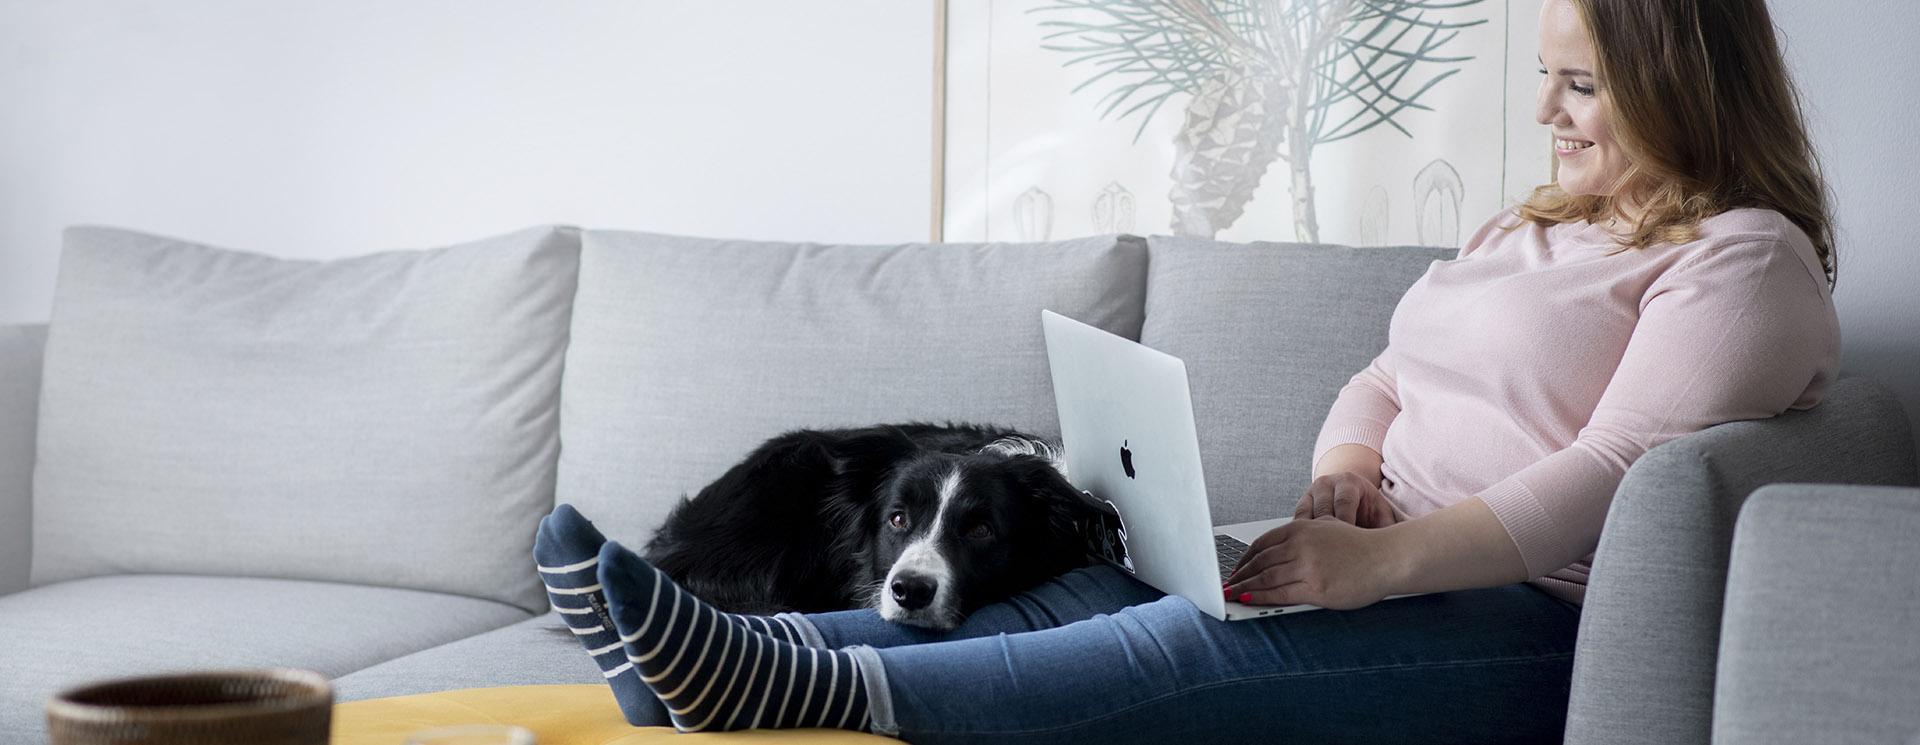 En kvinna sitter i en soffa med fötterna på bordet. I knät har hon en laptop och en svart, stor hund som vilar med huvudet på hennes ben.